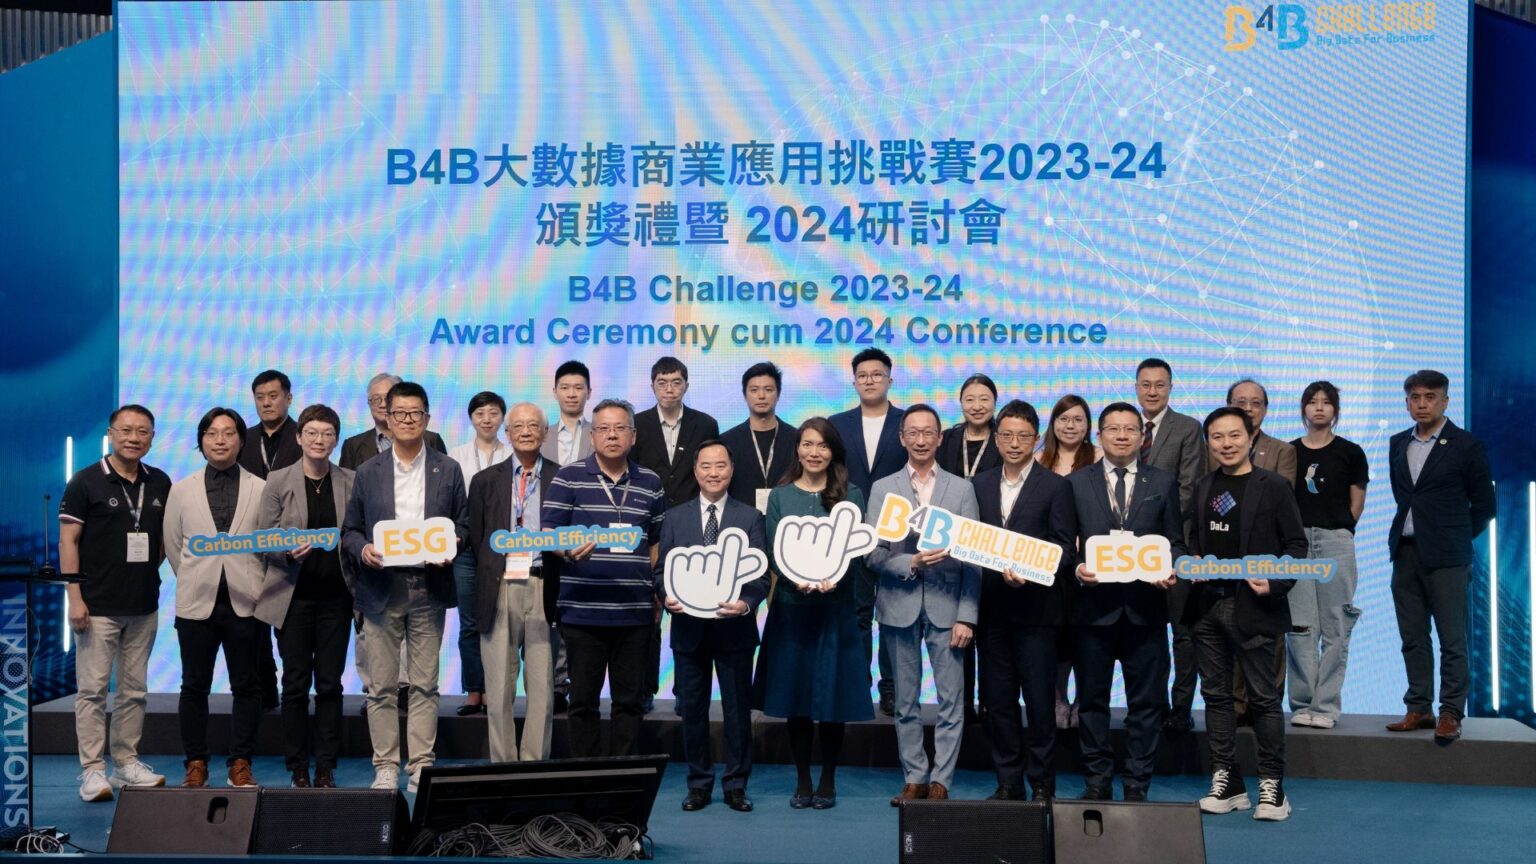 B4B大數據商業應用挑戰賽2023-24頒獎禮暨 2024研討會圓滿結束